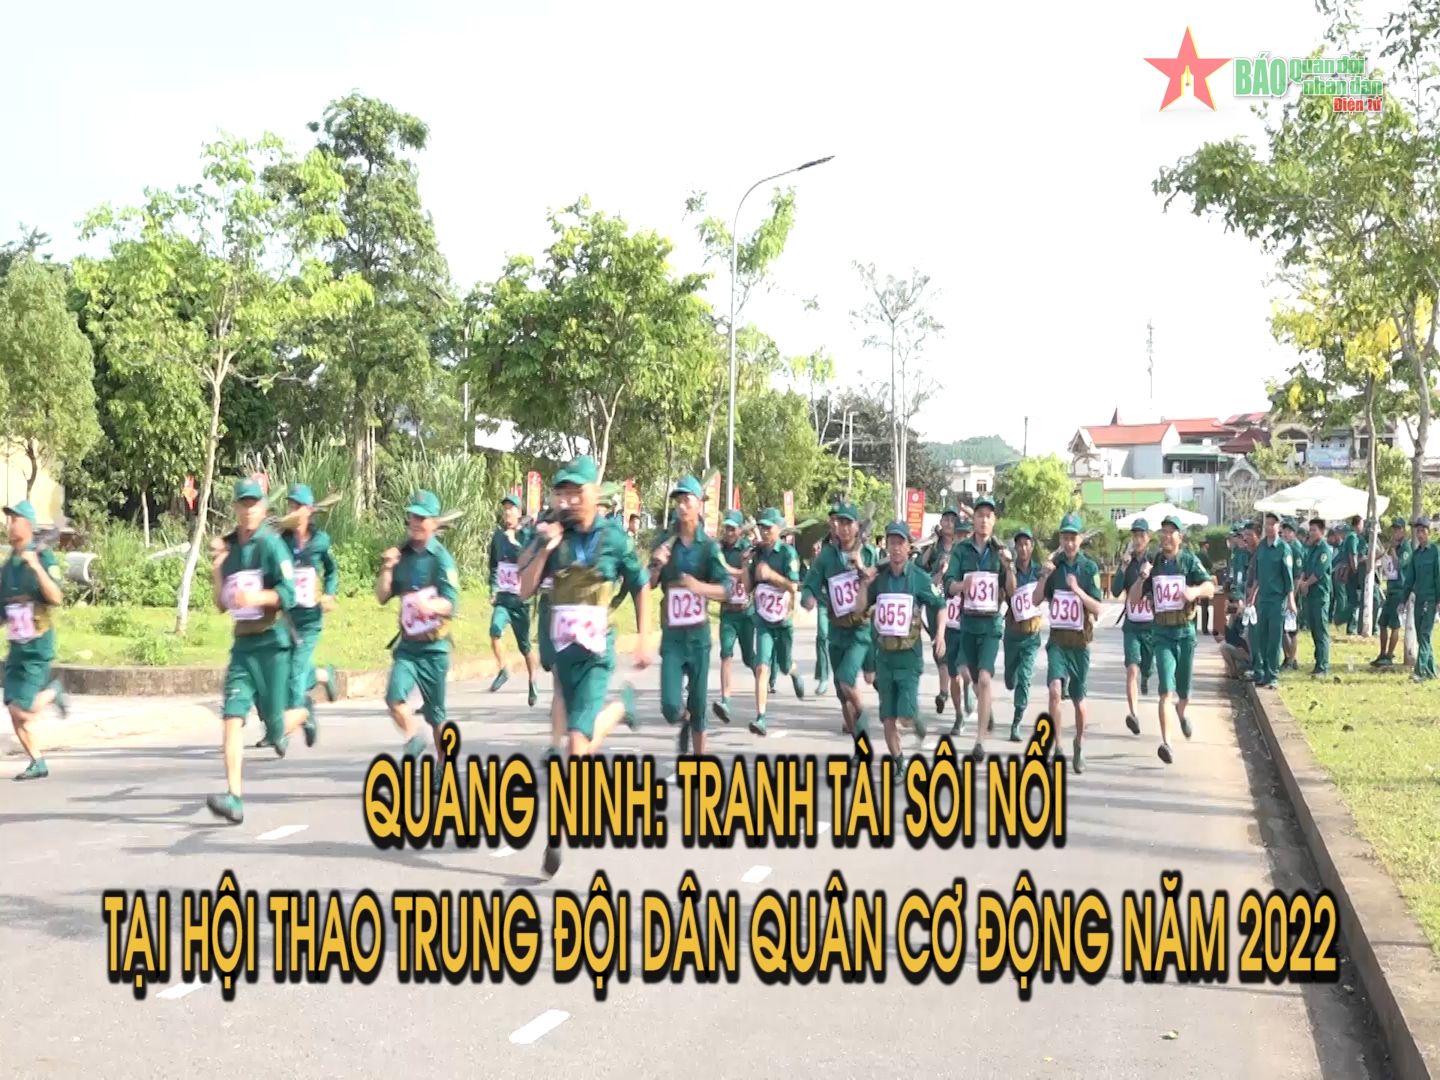 Quảng Ninh Tranh tài sôi nổi tại Hội thao Trung đội dân quân cơ động năm 2022